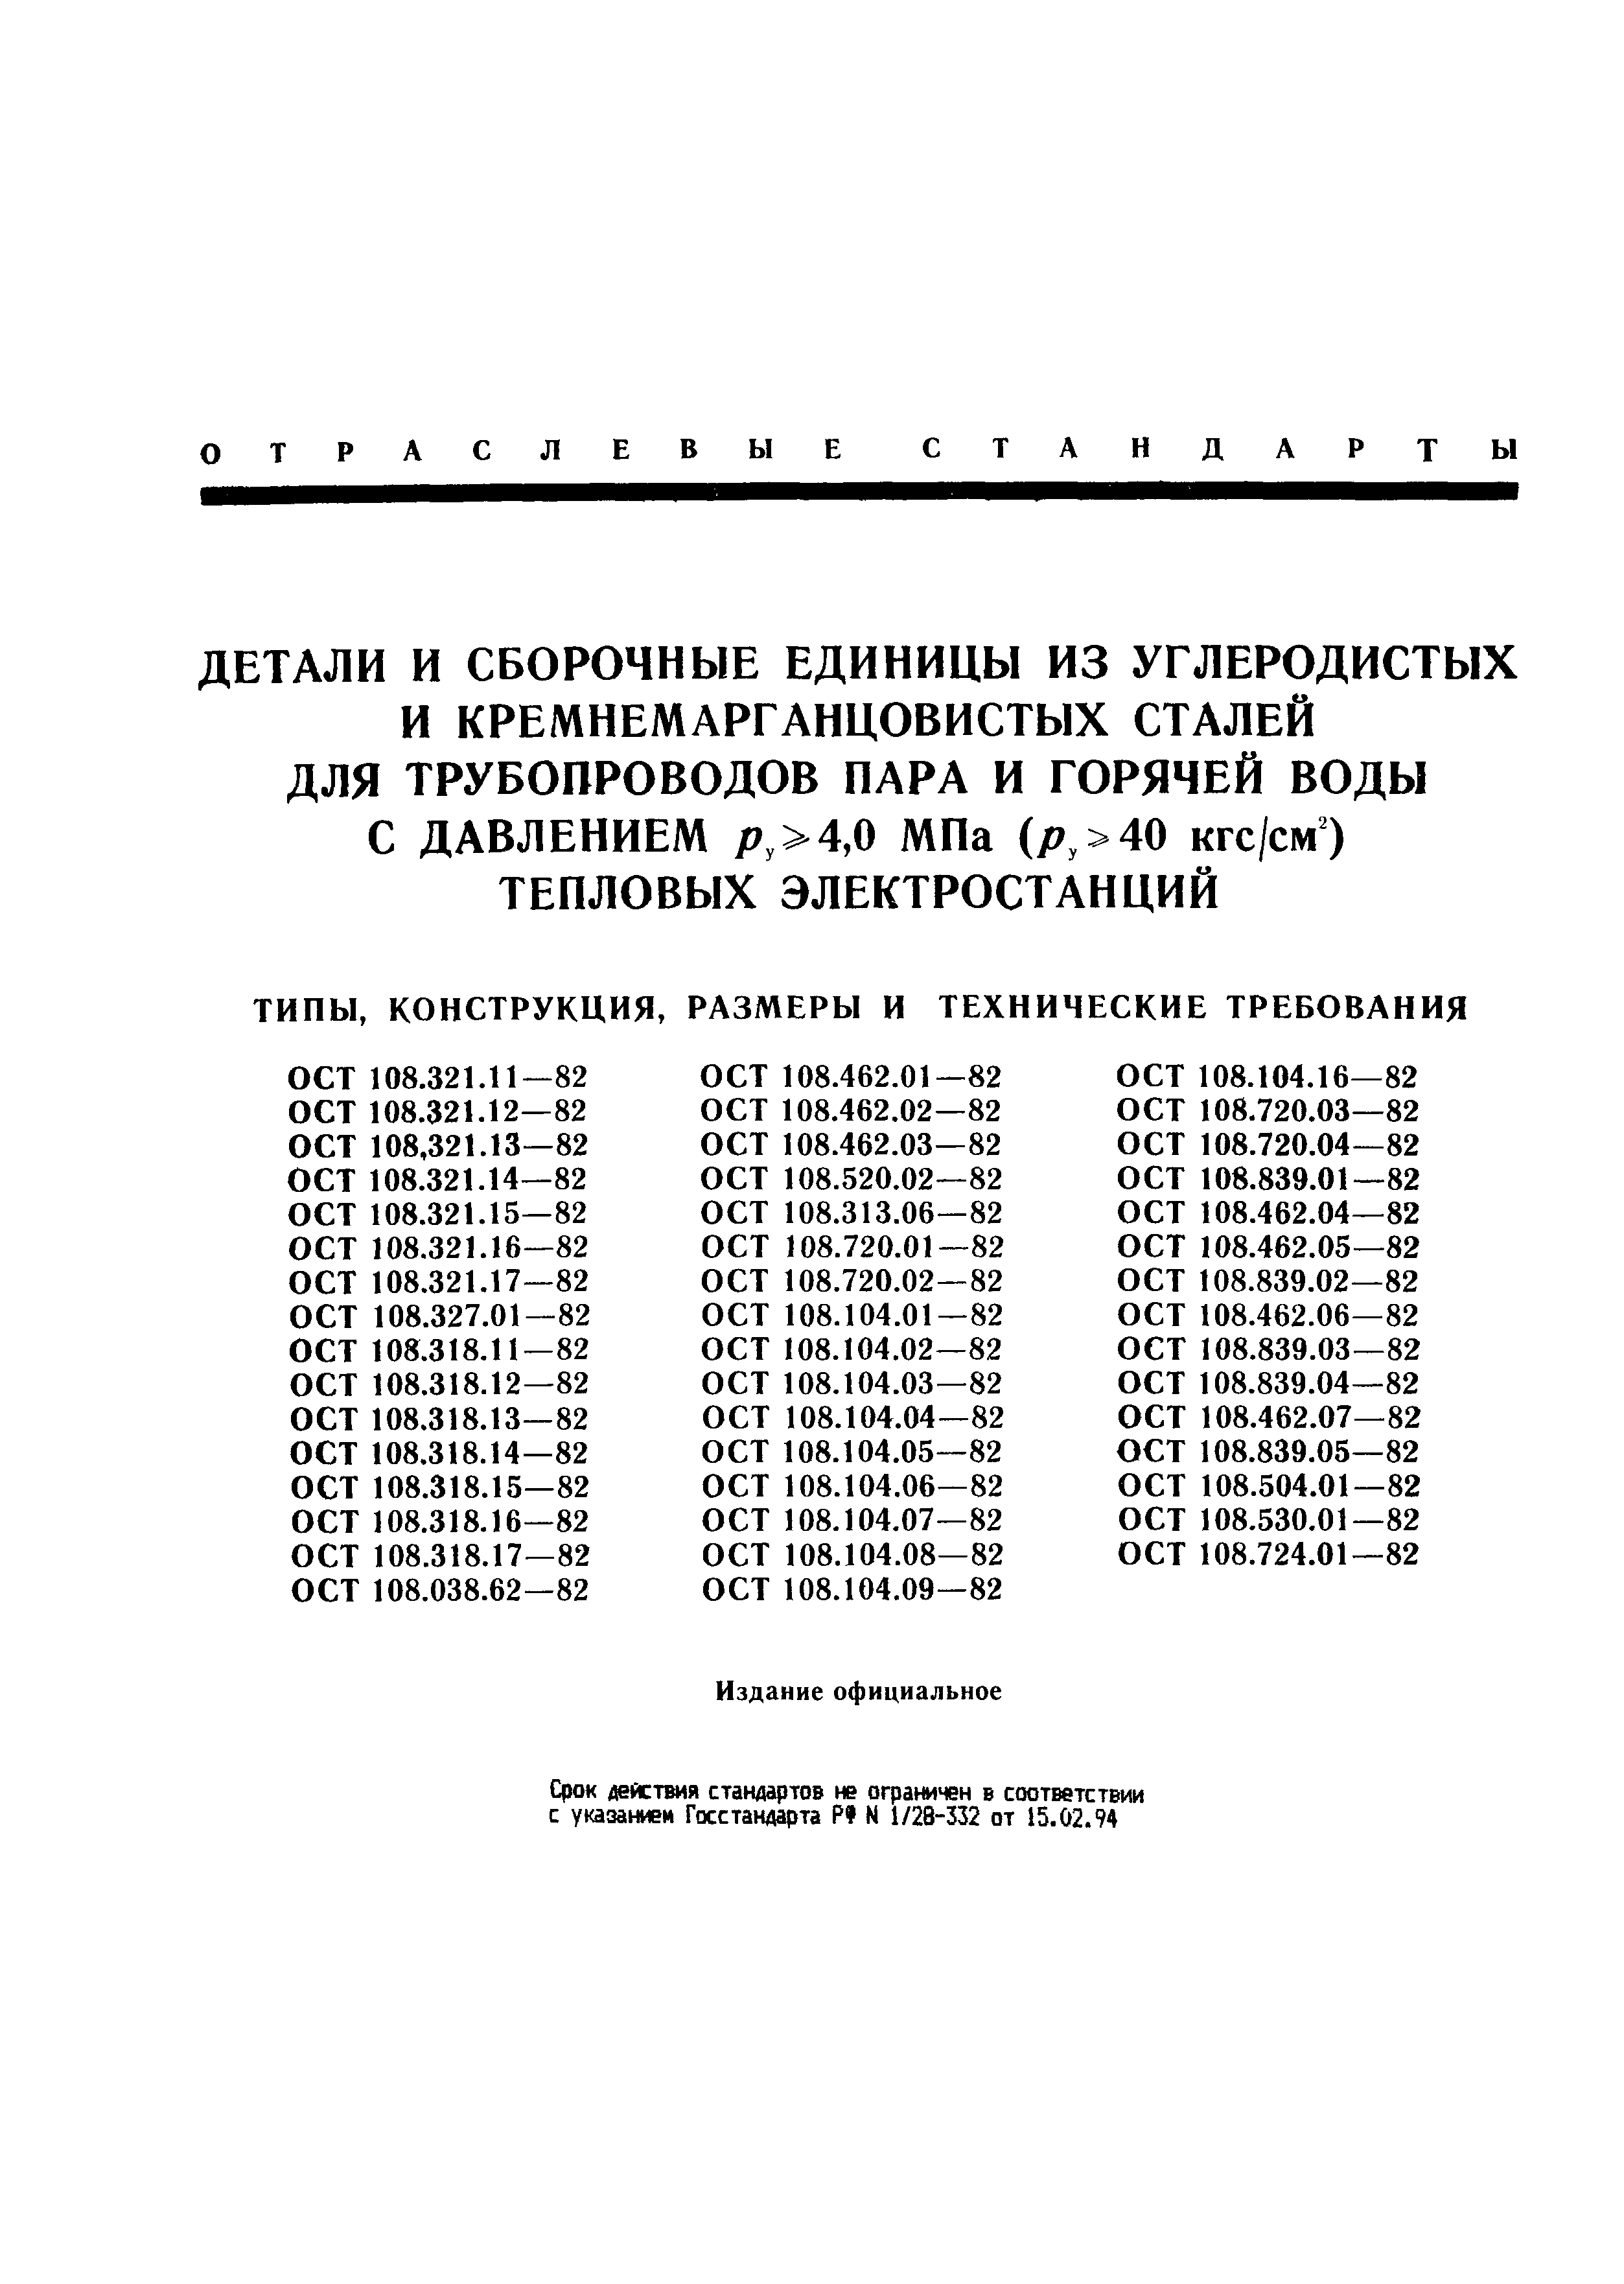 ОСТ 108.462.04-82